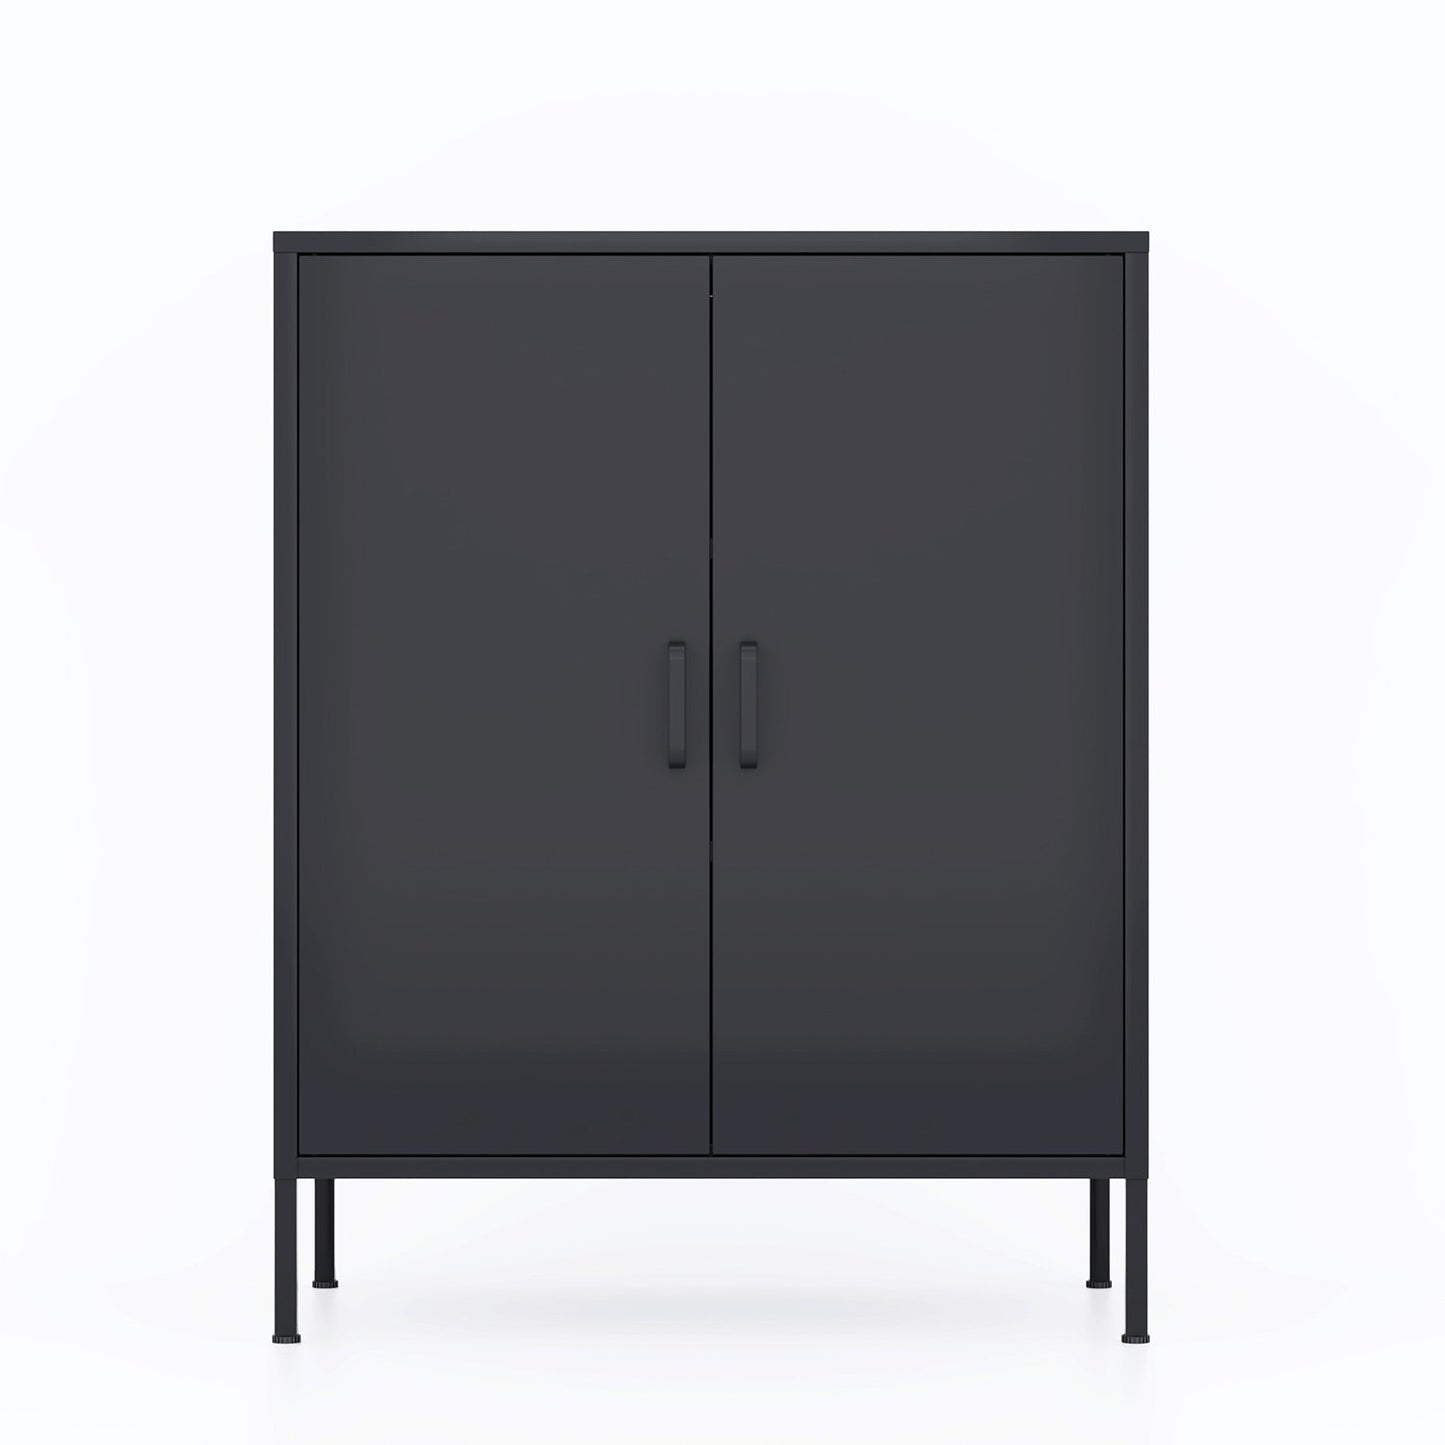 Gewnee 2 Door Metal Locker Accent Cabinet Storage Cabinet in Black